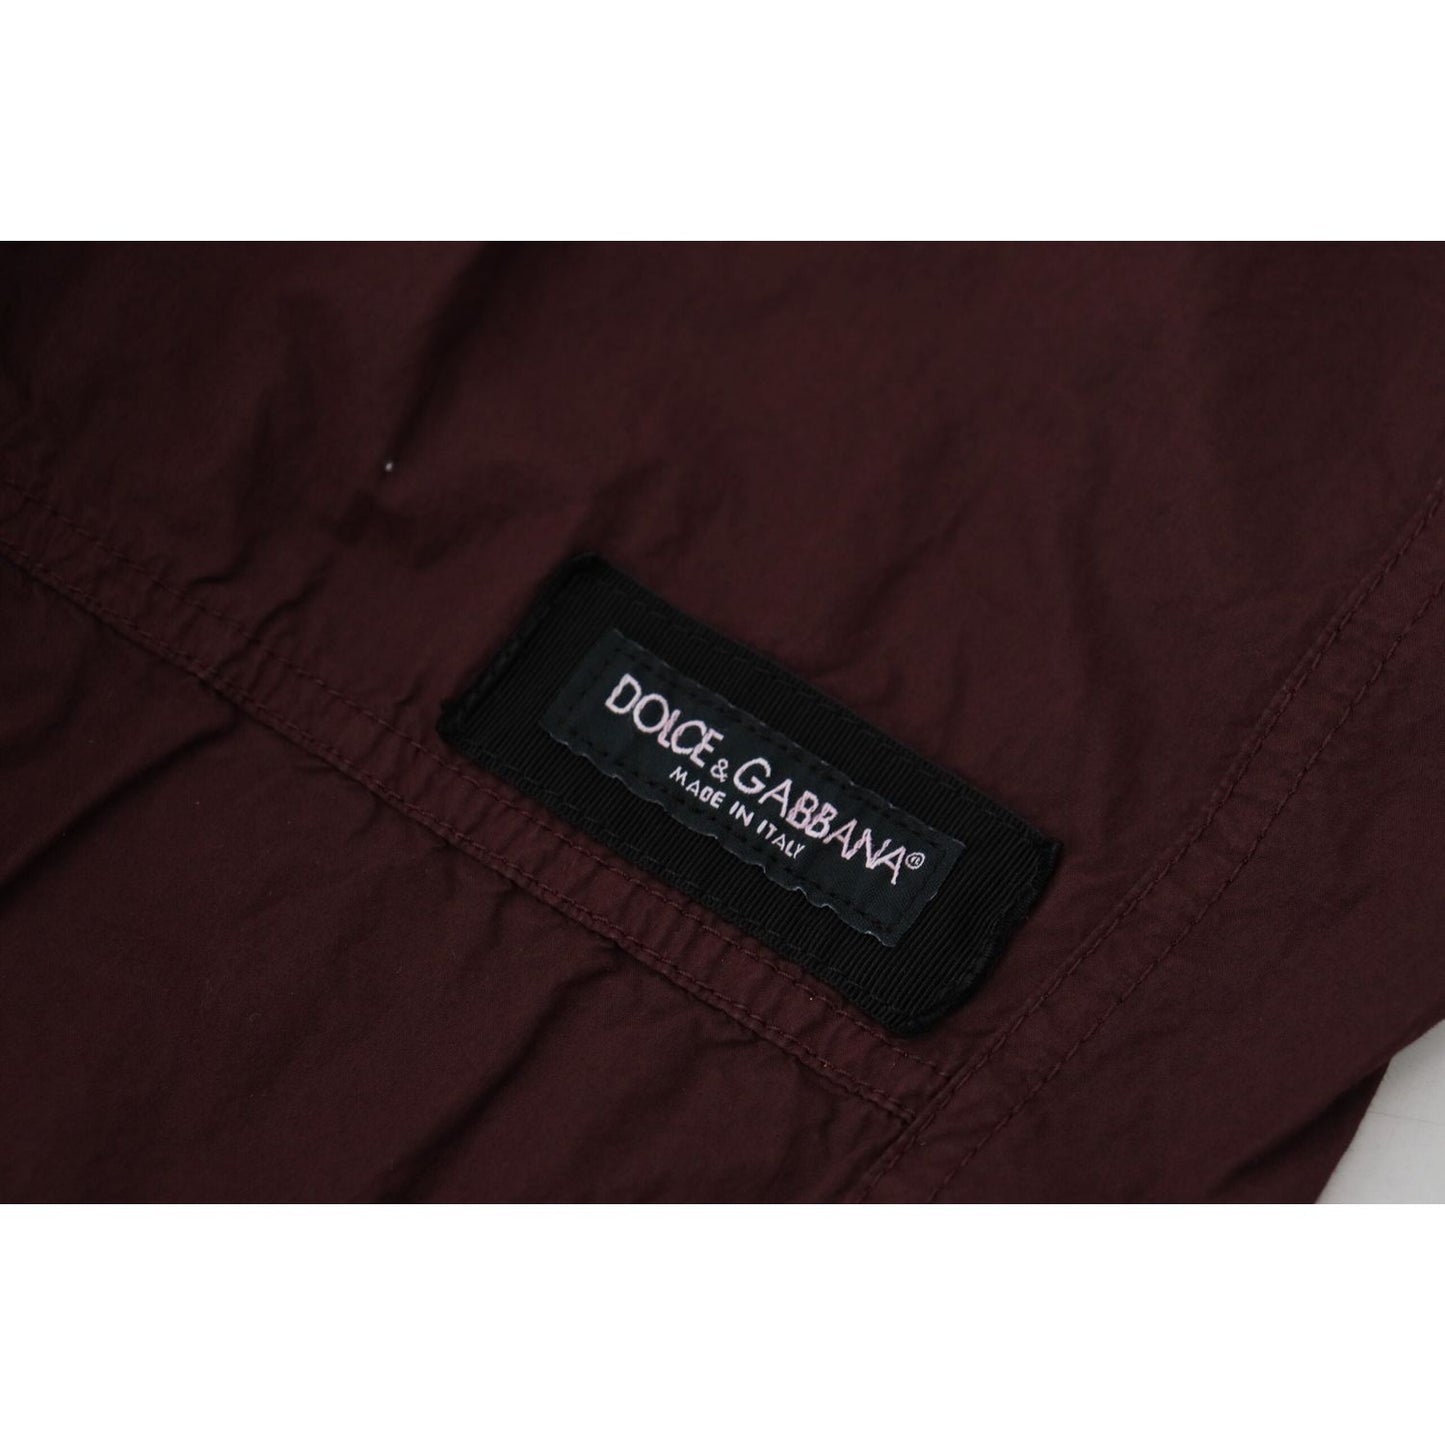 Dolce & Gabbana Elegant Burgundy Cotton Jogger Pants bordeaux-cotton-cargo-jogger-sweatpants-pants